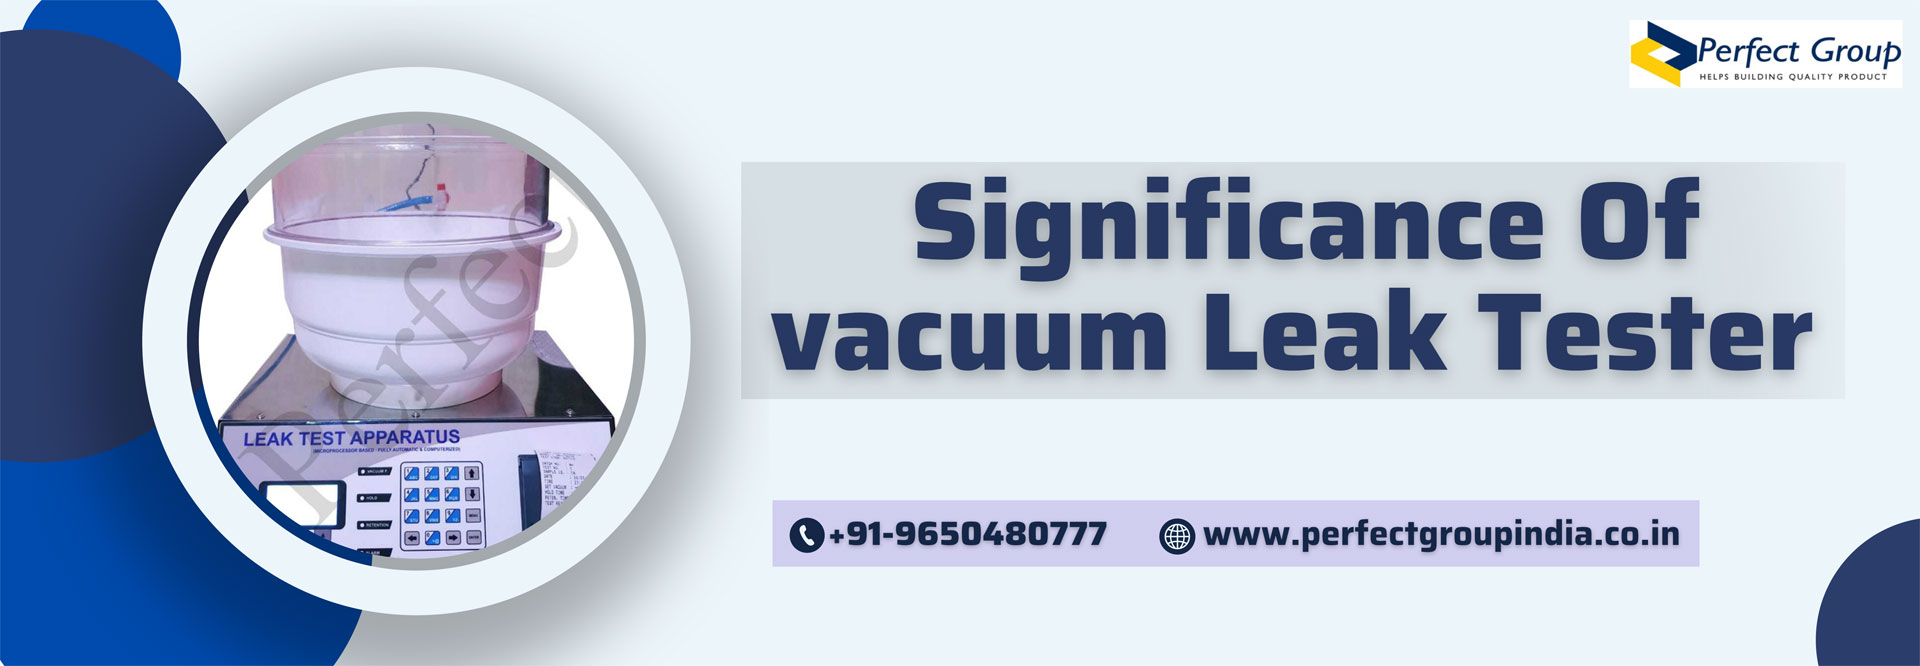 Significance of Vacuum Leak Tester